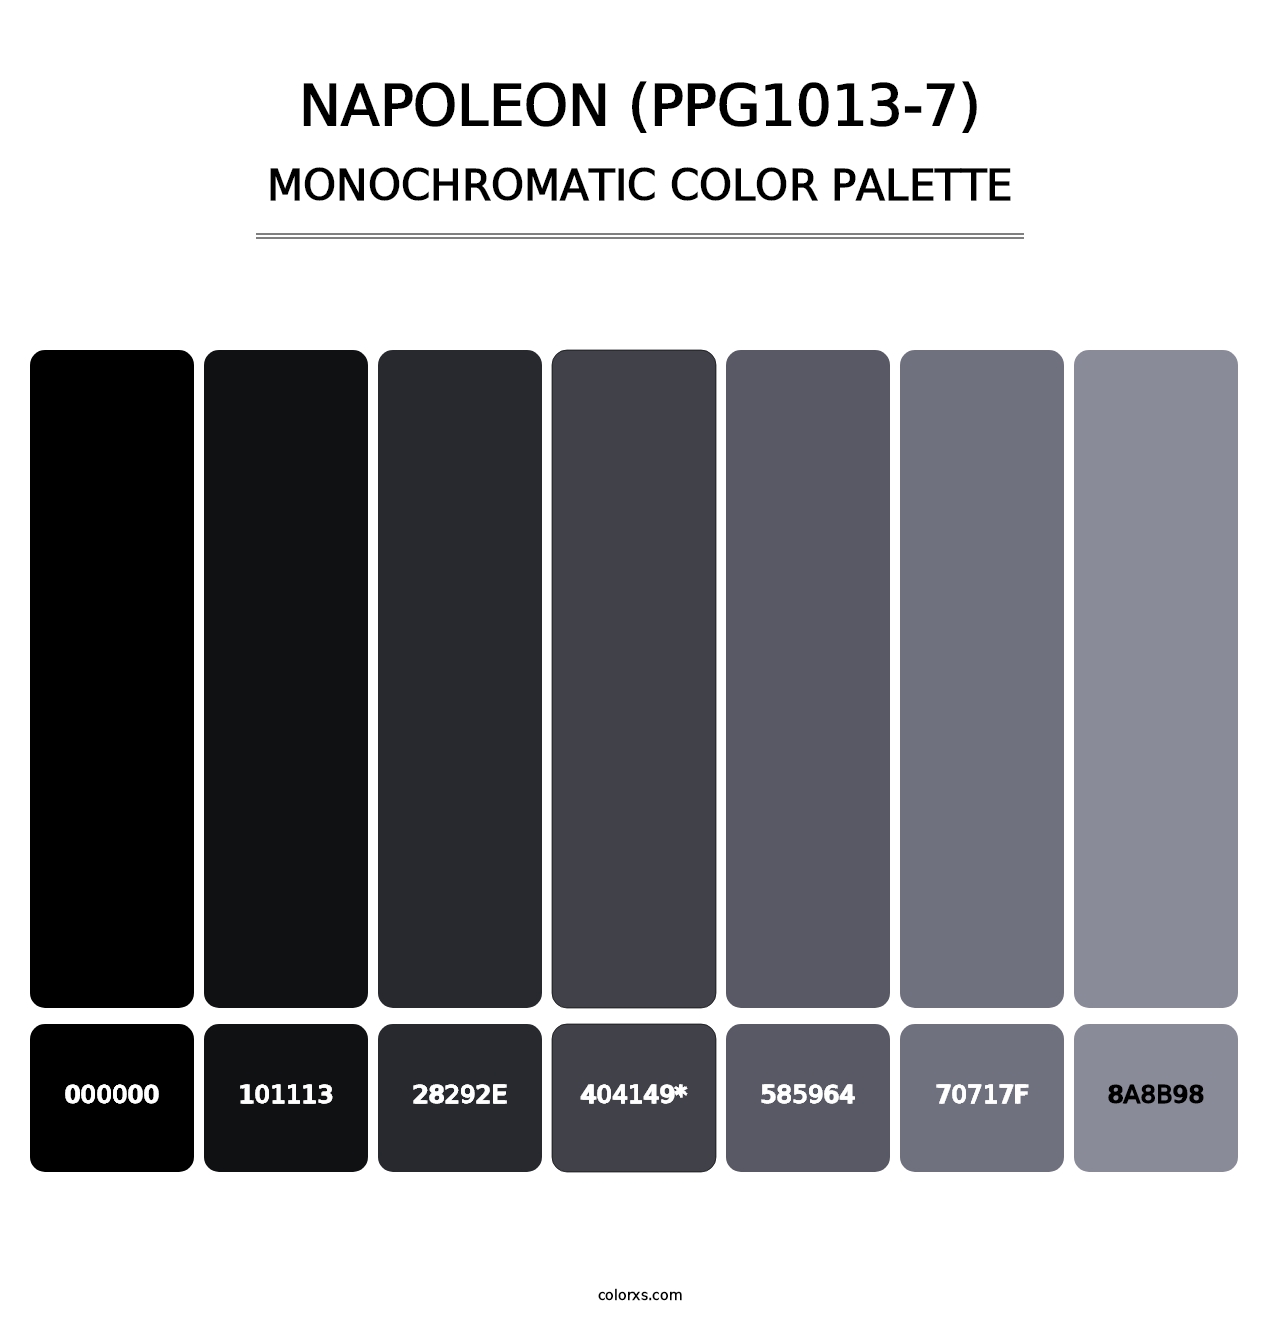 Napoleon (PPG1013-7) - Monochromatic Color Palette